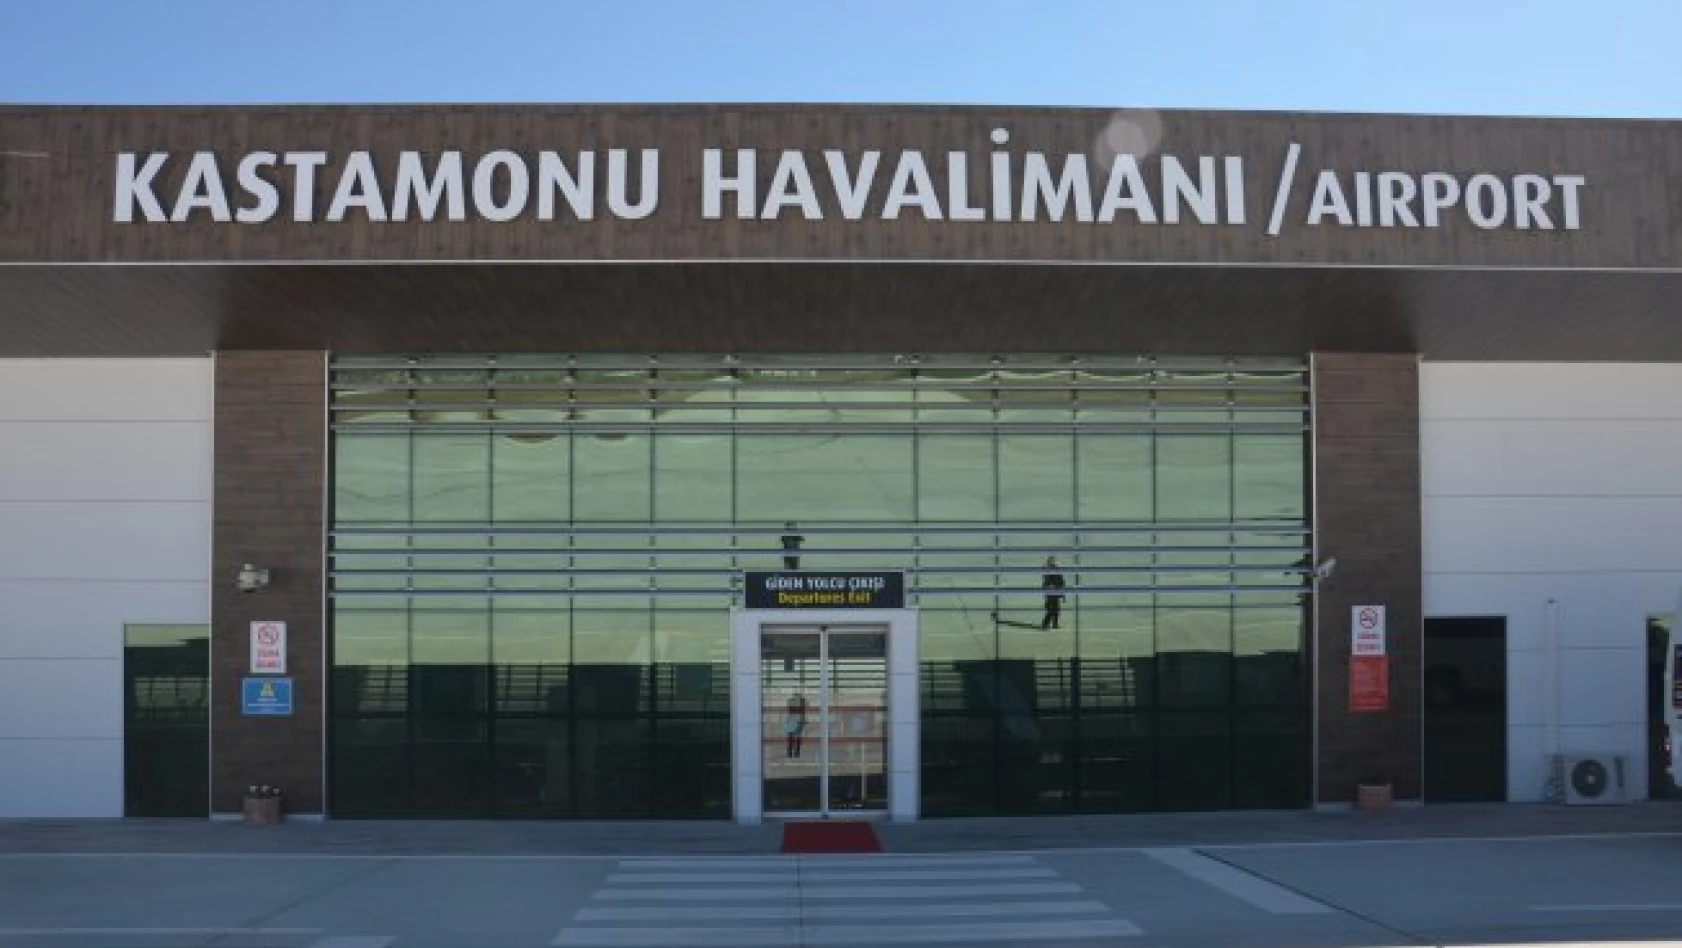 Kastamonu Havalimanı Temmuz ayı verileri açıklandı